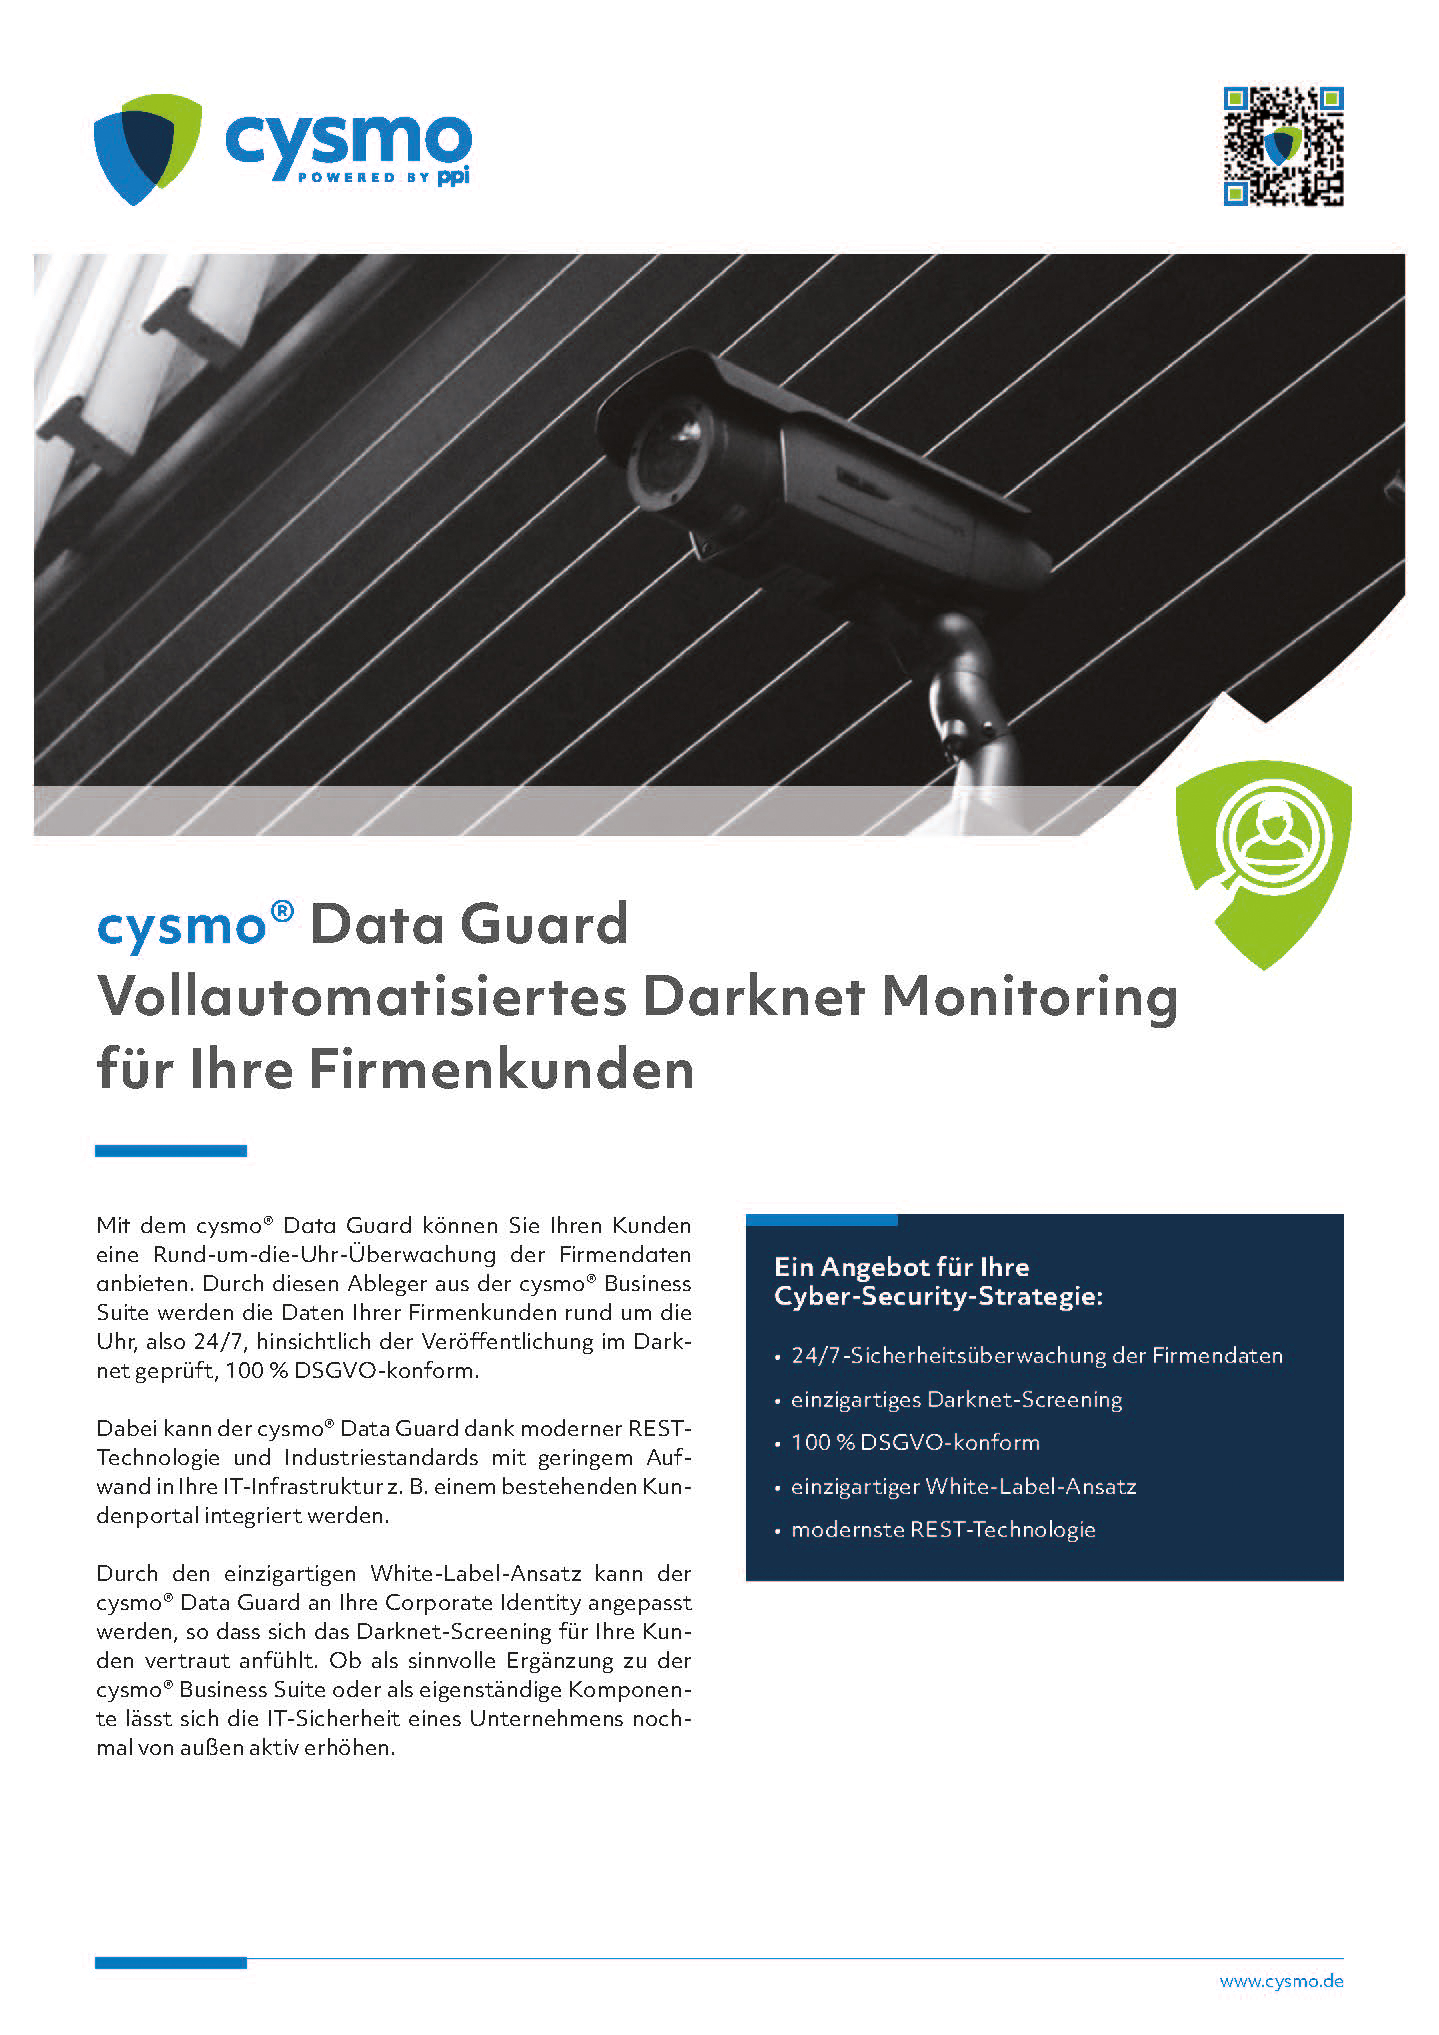 cysmo® Data Guard - Vollautomatisiertes Darknet Monitoring für Ihre Firmenkunden